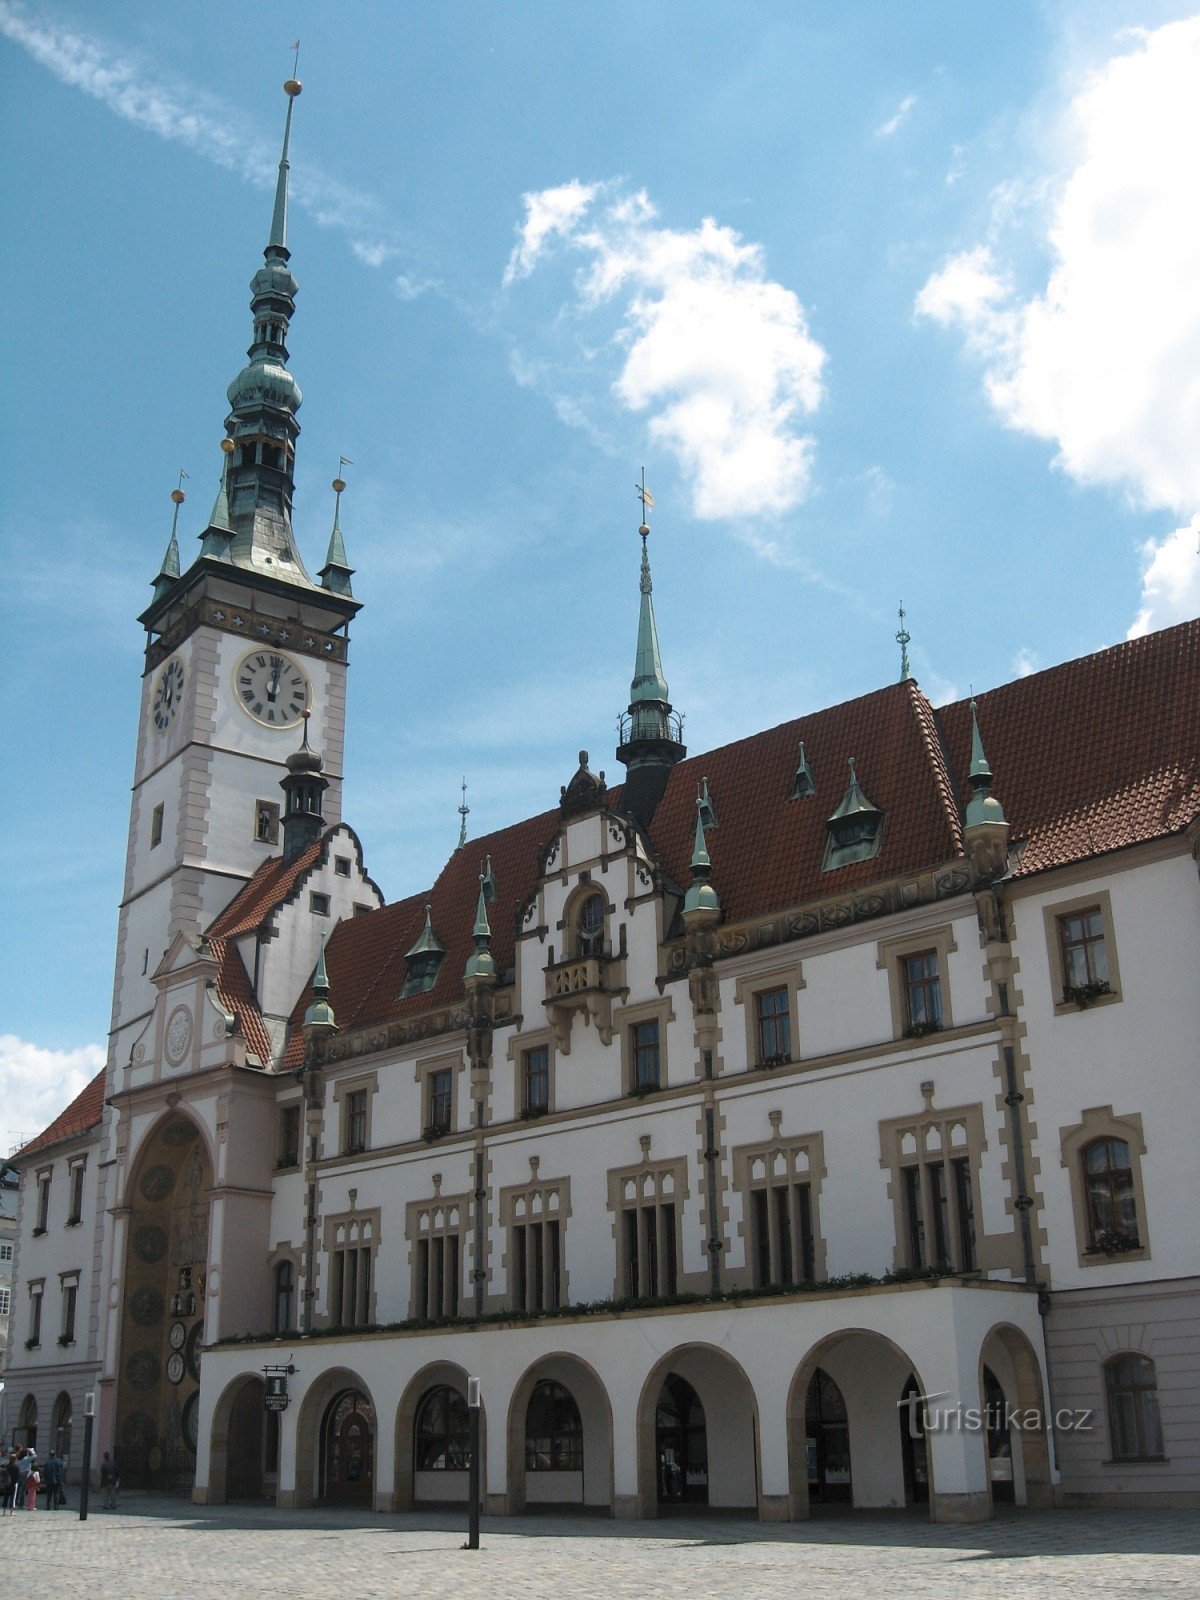 Đằng sau lịch sử và vẻ đẹp của thành phố Olomouc